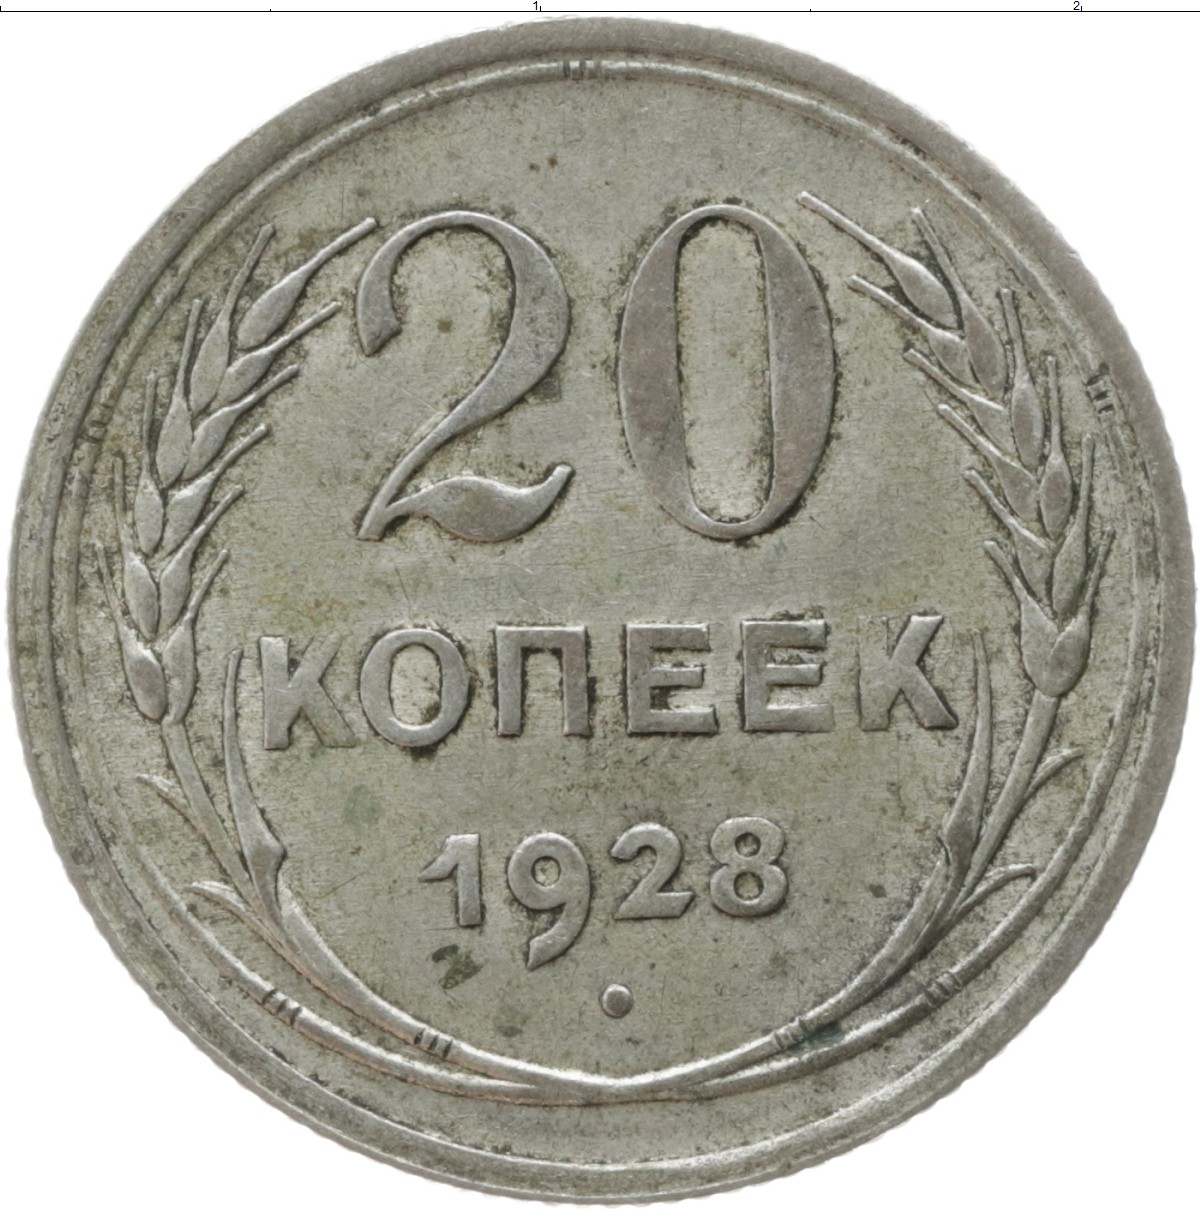 20 копеек пятьдесят лет. Монета 20 копеек 1928 года. 50 Копеек 1971 года. Монета 1925 года 20 копеек. 10 Копеек 1927 год монета.